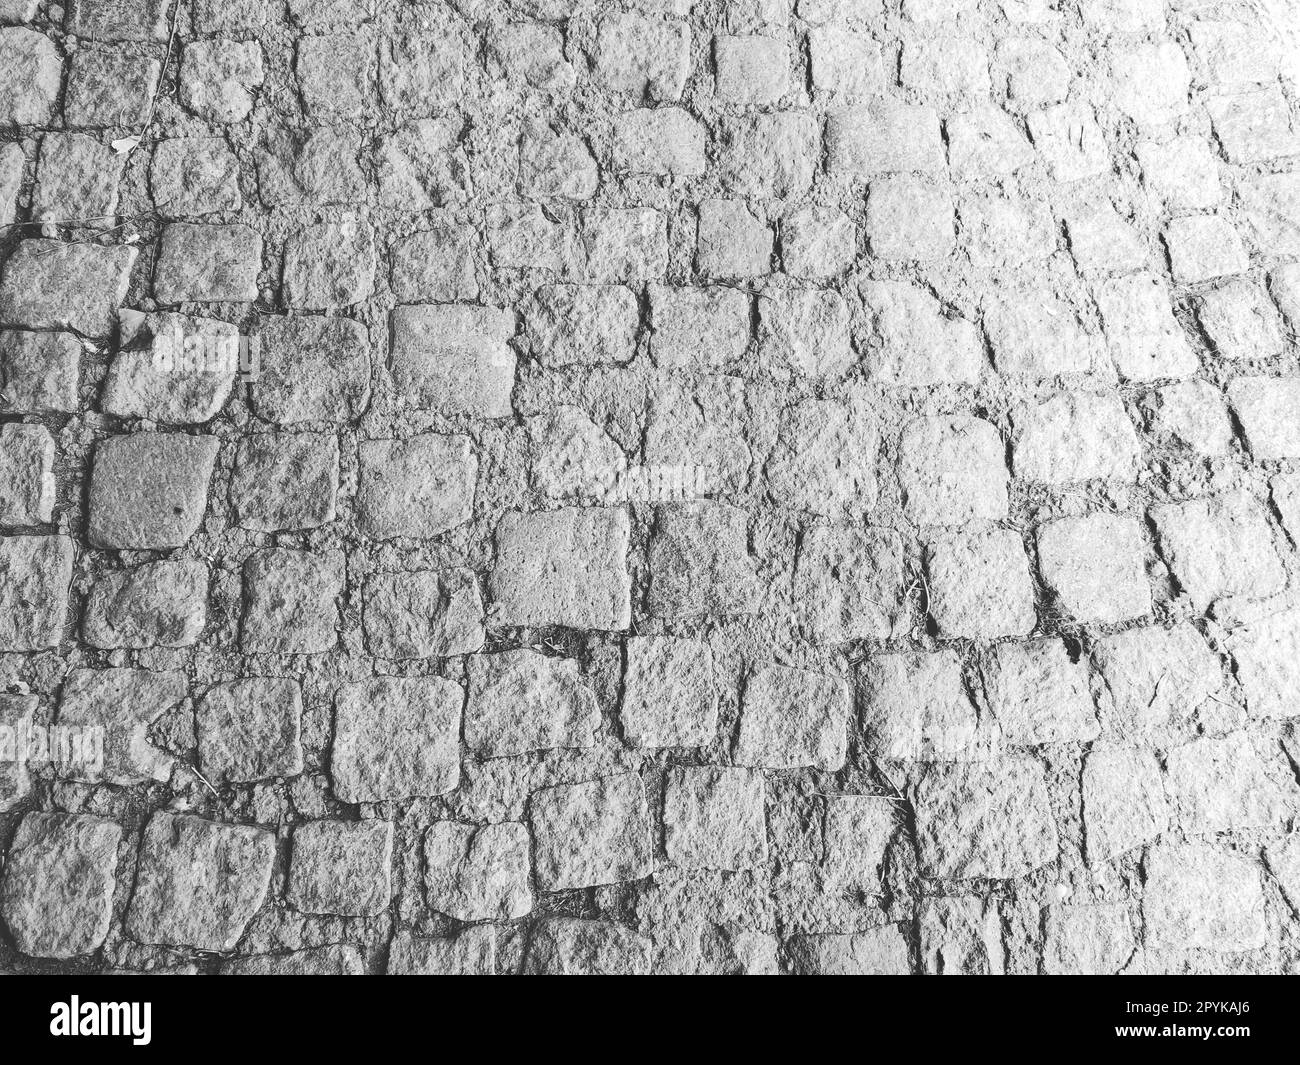 Pavimentazione pavimentata con pietre naturali irregolari. Tra i ciottoli frantumati ci sono piccoli ciottoli, terra, sabbia, erba. Nella vecchia città europea. Fotografia orizzontale monocromatica in bianco e nero Foto Stock